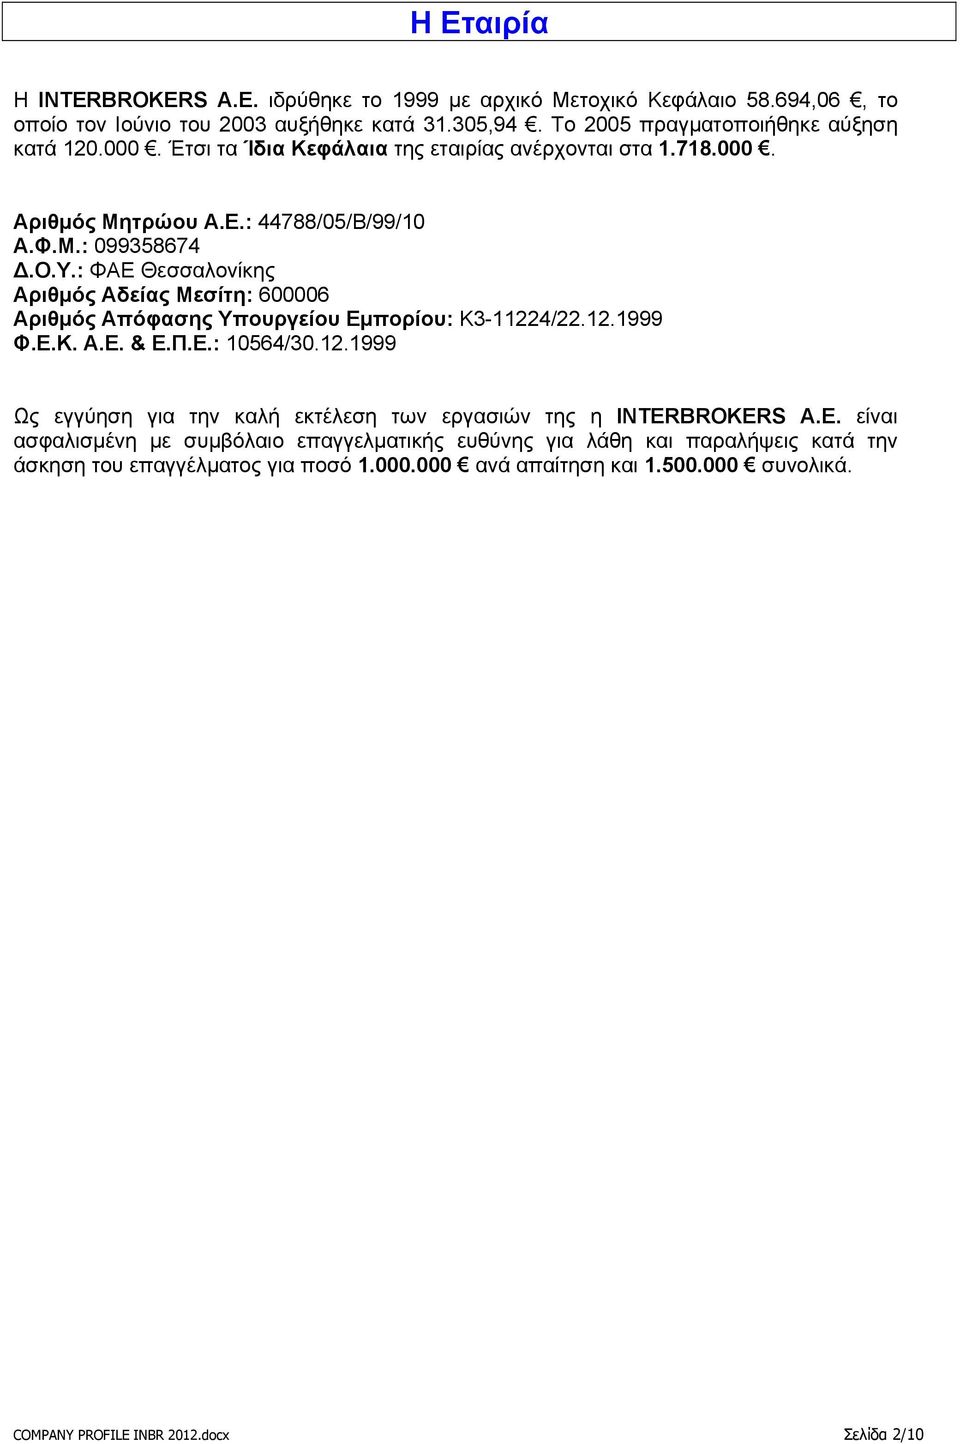 : ΦΑΕ Θεσσαλονίκης Αριθμός Αδείας Μεσίτη: 600006 Αριθμός Απόφασης Υπουργείου Εμπορίου: Κ3-11224/22.12.1999 Φ.Ε.Κ. Α.Ε. & Ε.Π.Ε.: 10564/30.12.1999 Ως εγγύηση για την καλή εκτέλεση των εργασιών της η INTERBROKERS Α.